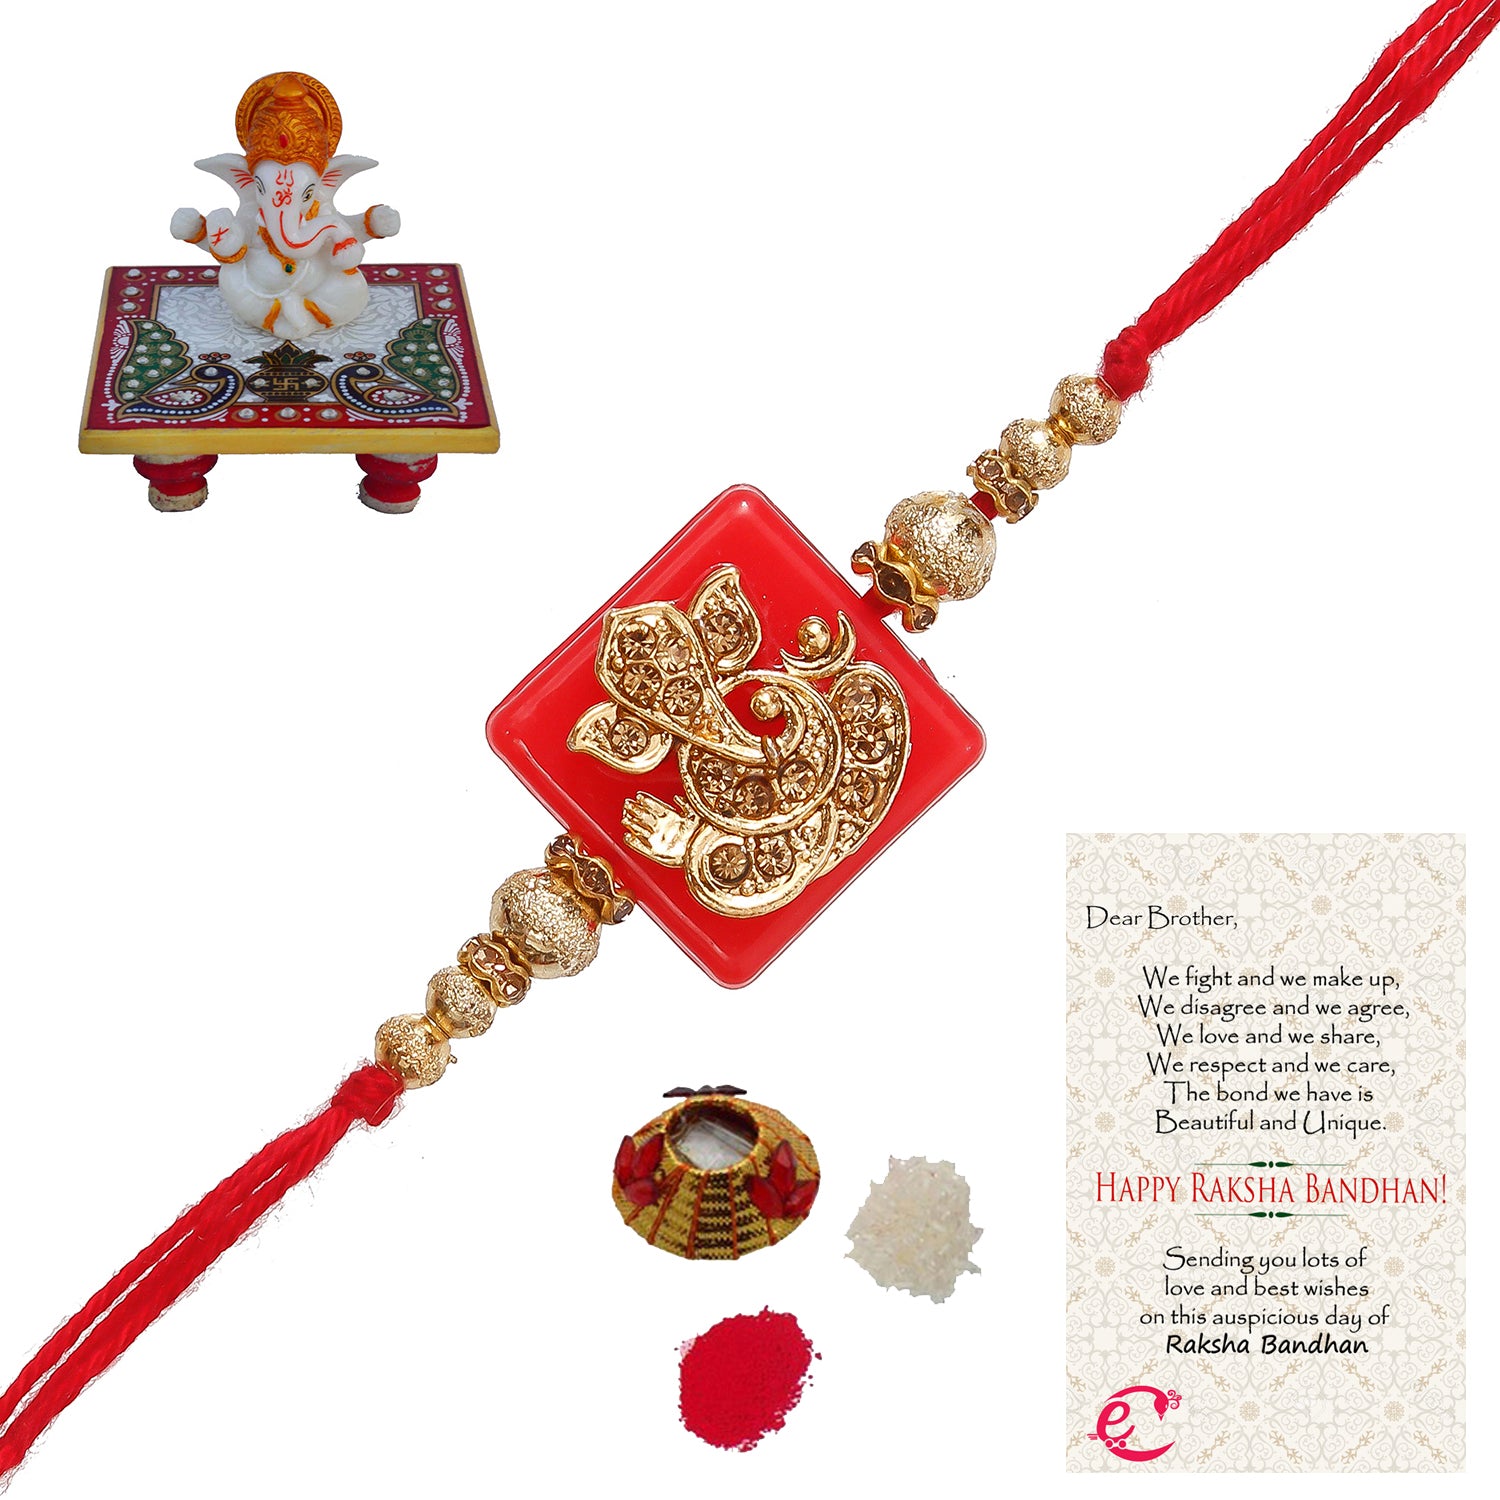 Designer Religious Ganesha Rakhi with Lord Ganesha Marble Chowki and Roli Tikka Matki, Best Wishes Greeting Card